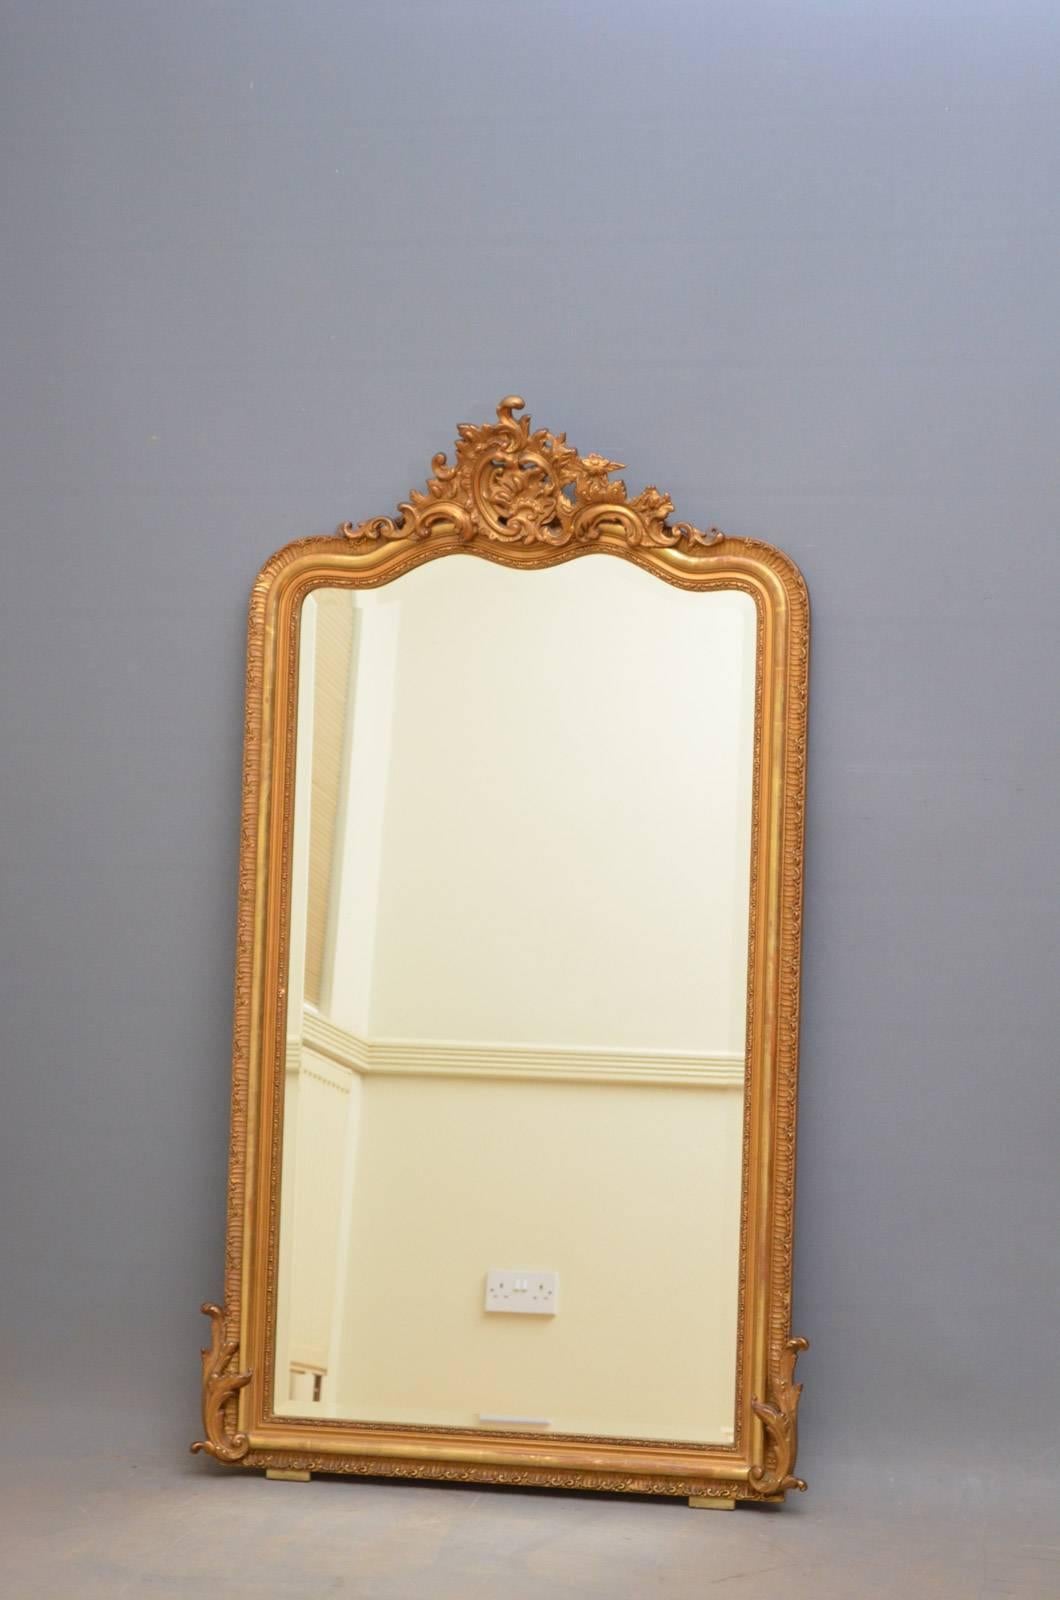 J00 Vergoldeter Spiegel aus der Jahrhundertwende, mit fein geschnitzter Kartusche in der Mitte und ursprünglicher Spiegelplatte mit abgeschrägter Kante und einigen Stockflecken im geschnitzten Rahmen. Dieser antike Spiegel behält seine ursprüngliche